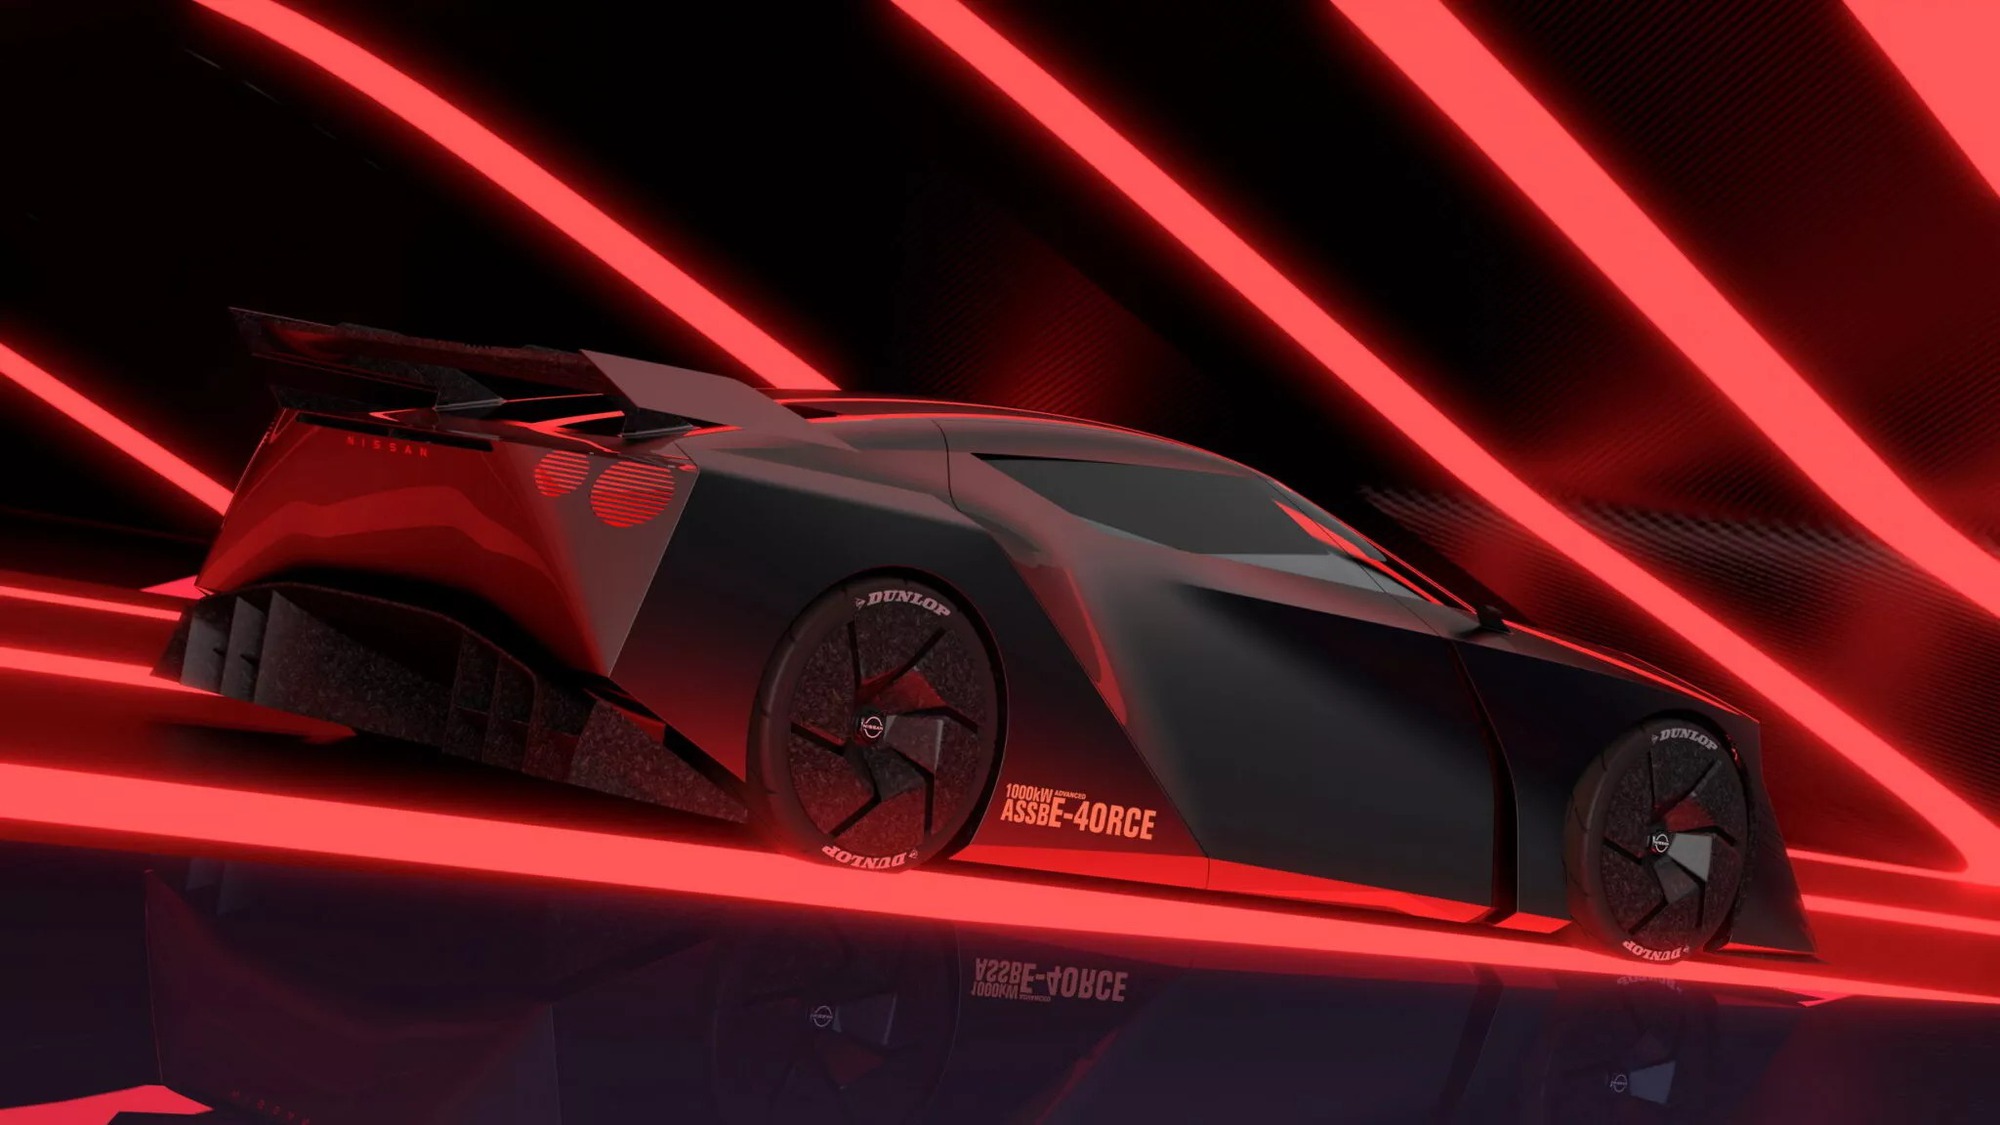 Siêu xe Nissan mới: Mạnh hơn 1.300hp, người lái chơi được game đua xe ảo trong cabin